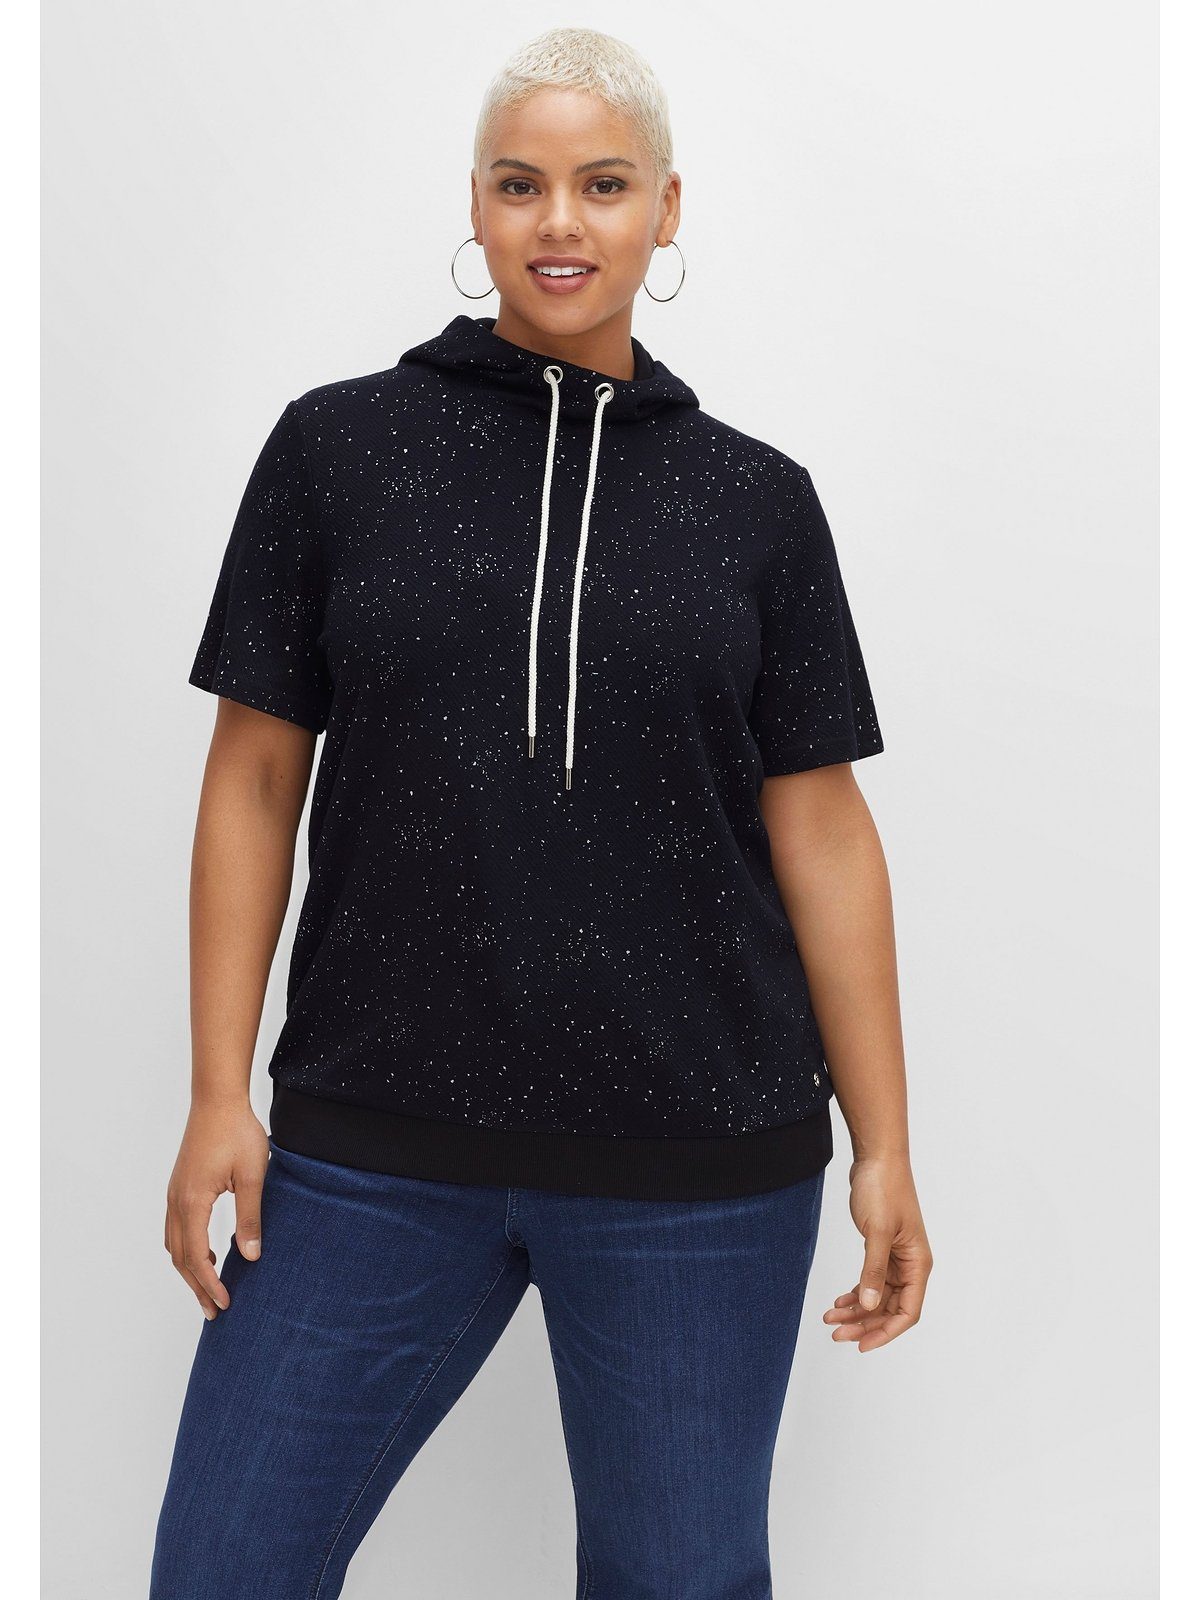 Sheego T-Shirt Große Größen aus leichter Sweatware, mit Kapuze schwarz meliert